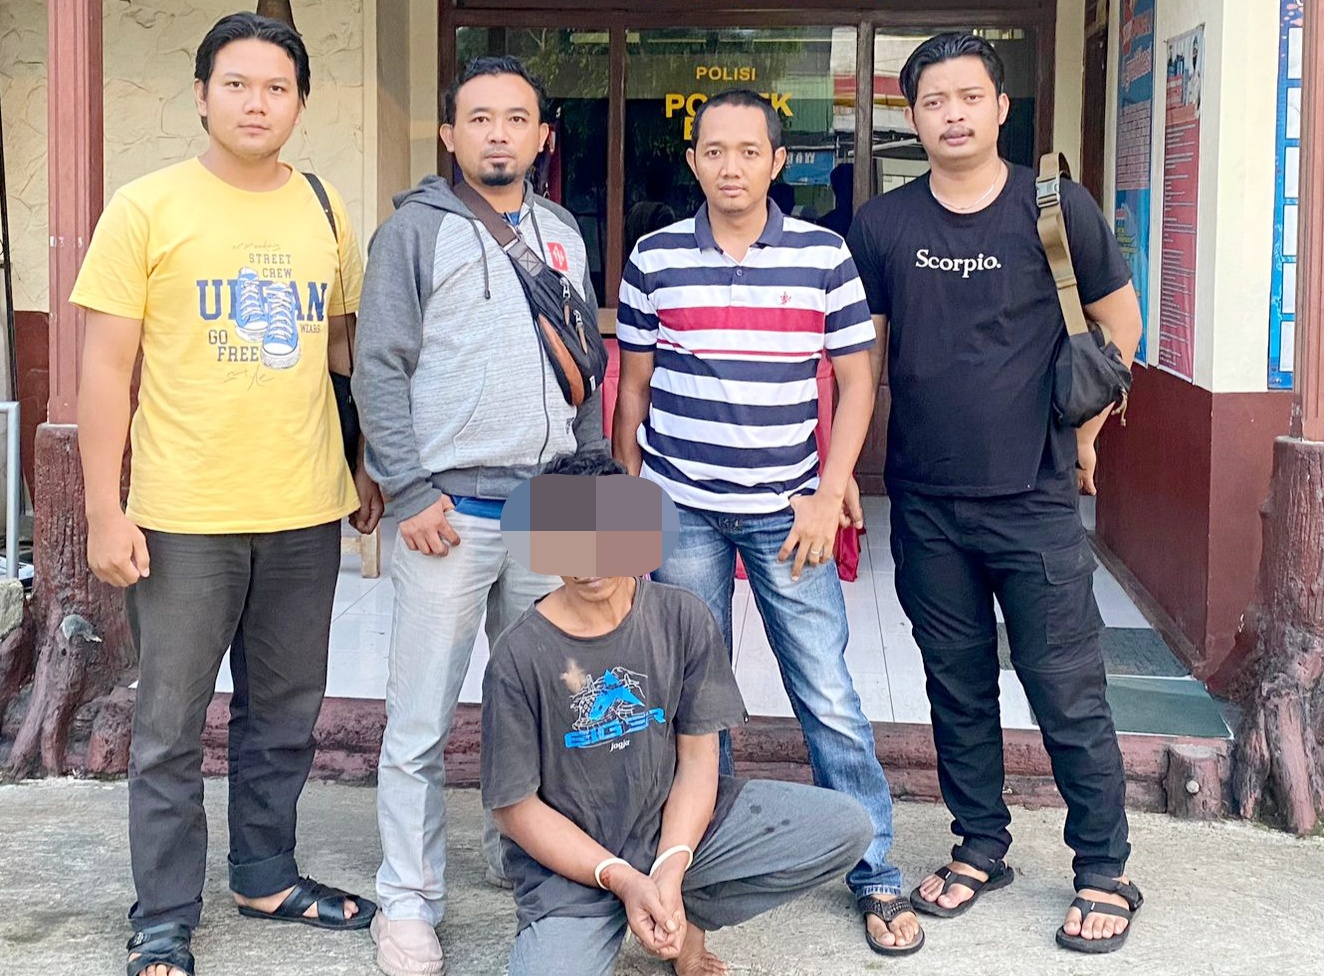 Gunakan Kunci Duplikat, Warga Pemalang Curi Motor Adik Ipar, Pelaku Diringkus Polisi di Depok Jawa Barat